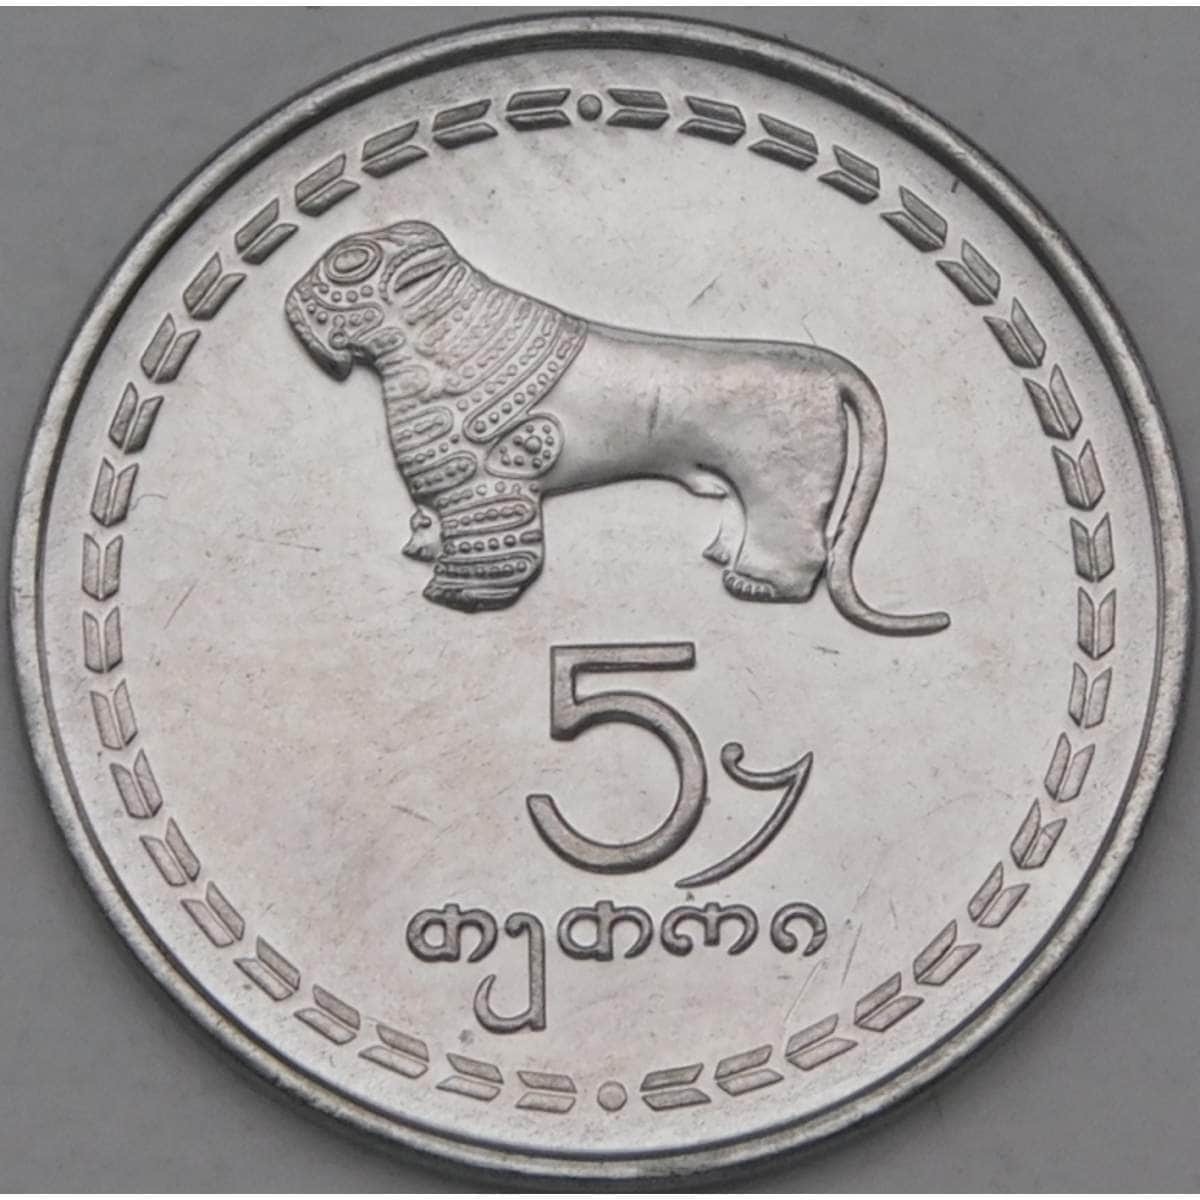 Грузия монеты название